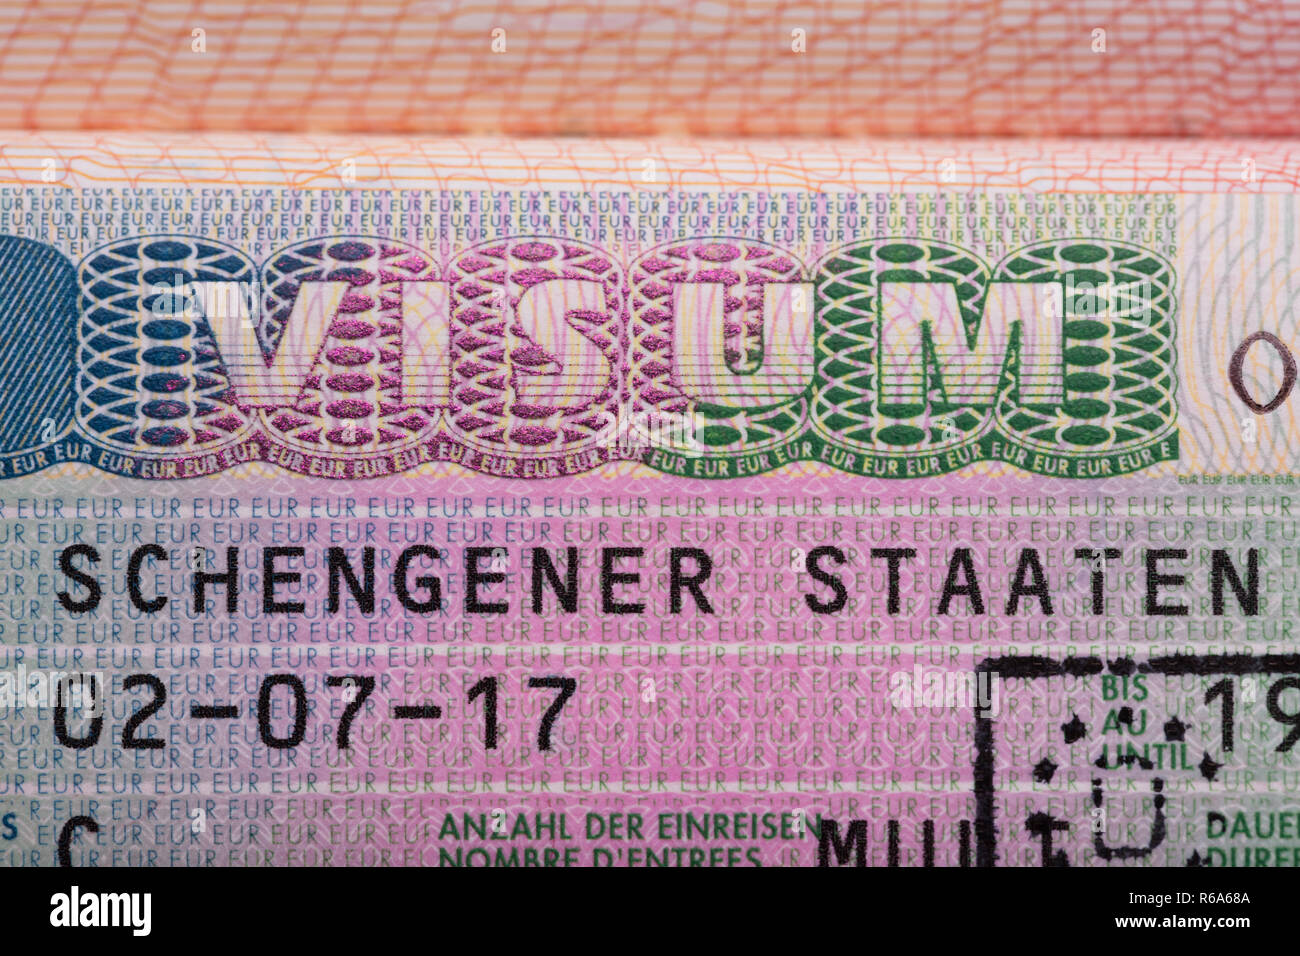 Visum Text On Passport Stock Photo